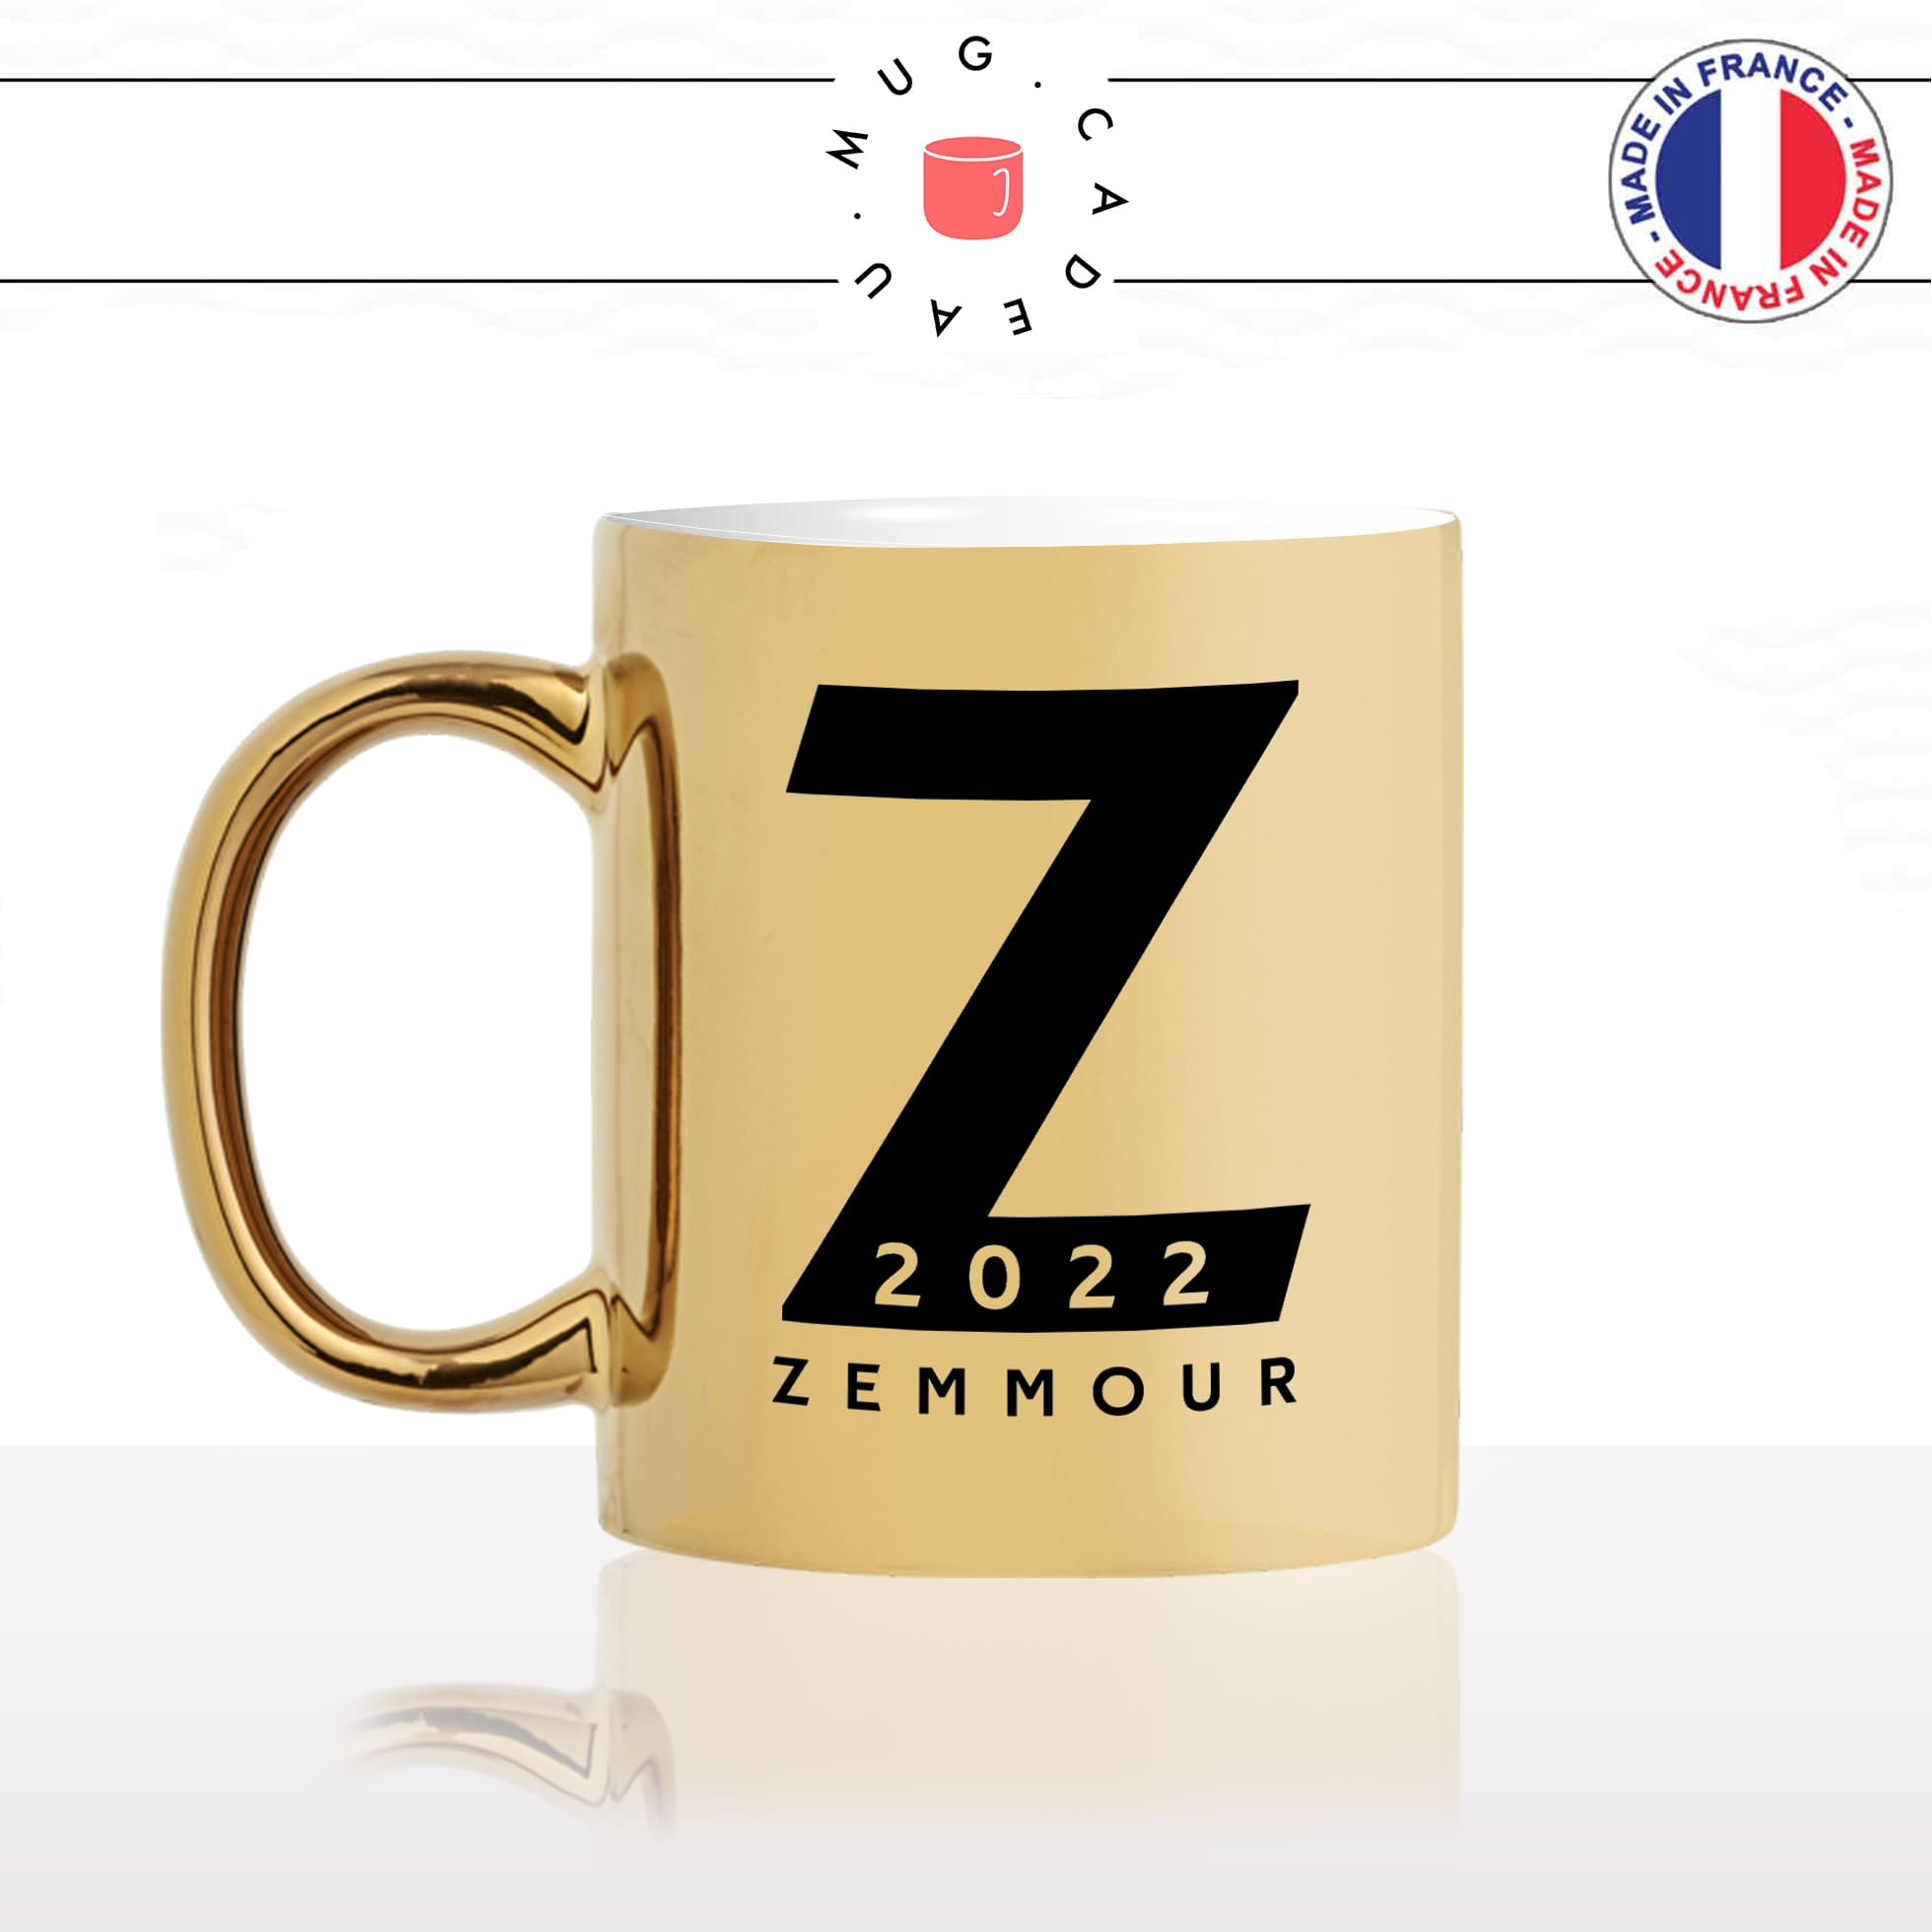 mug-tasse-or-gold-doré-brillant-Z-zemmour-eric-2022-futur-president-campagne-presidentielle-candidat-elections-politique-idée-cadeau-originale-fun